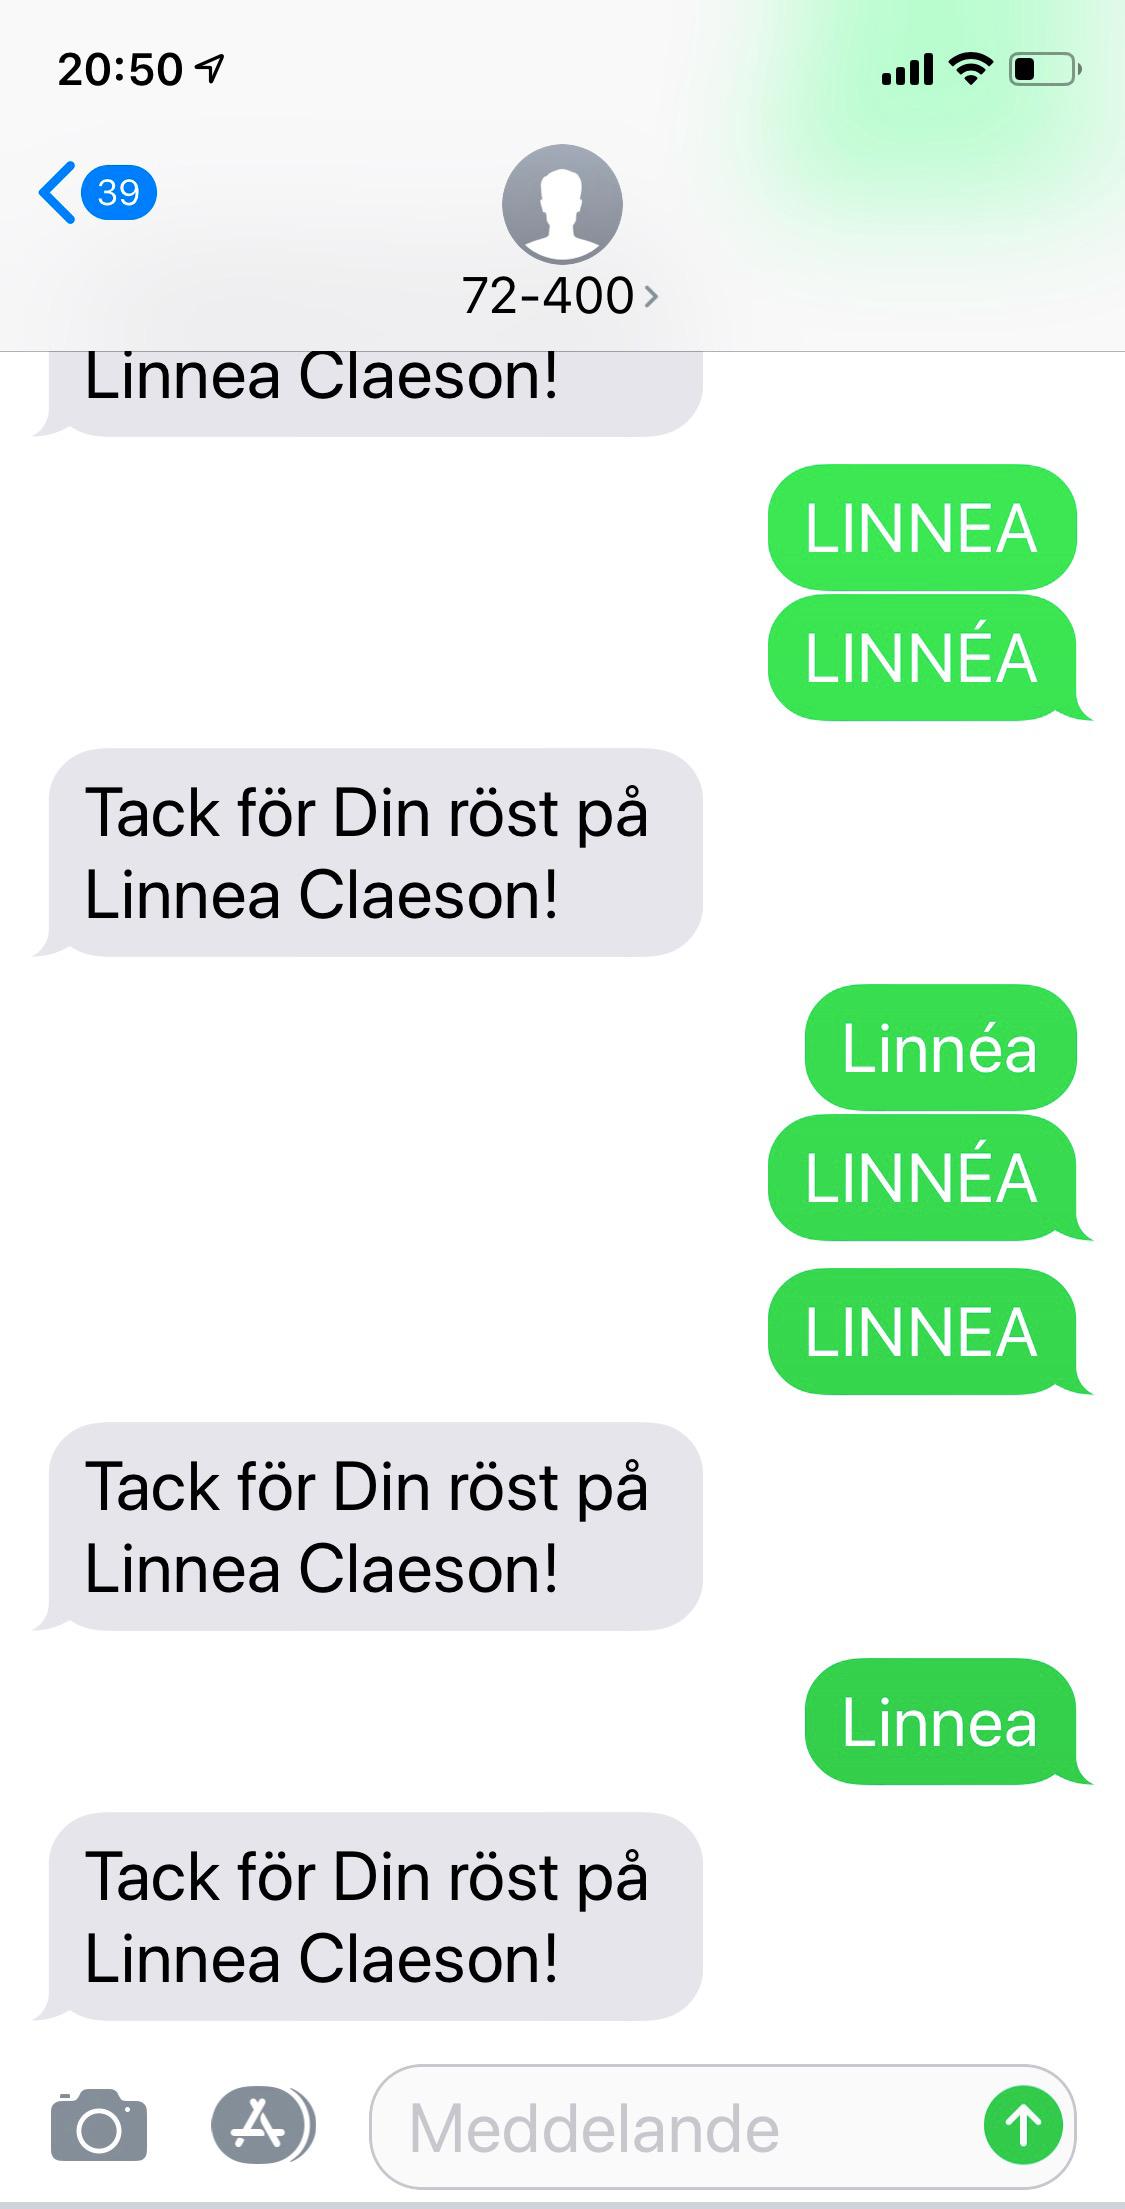 Så här såg det ut om man försökte rösta på LINNÉA respektive LINNEA.